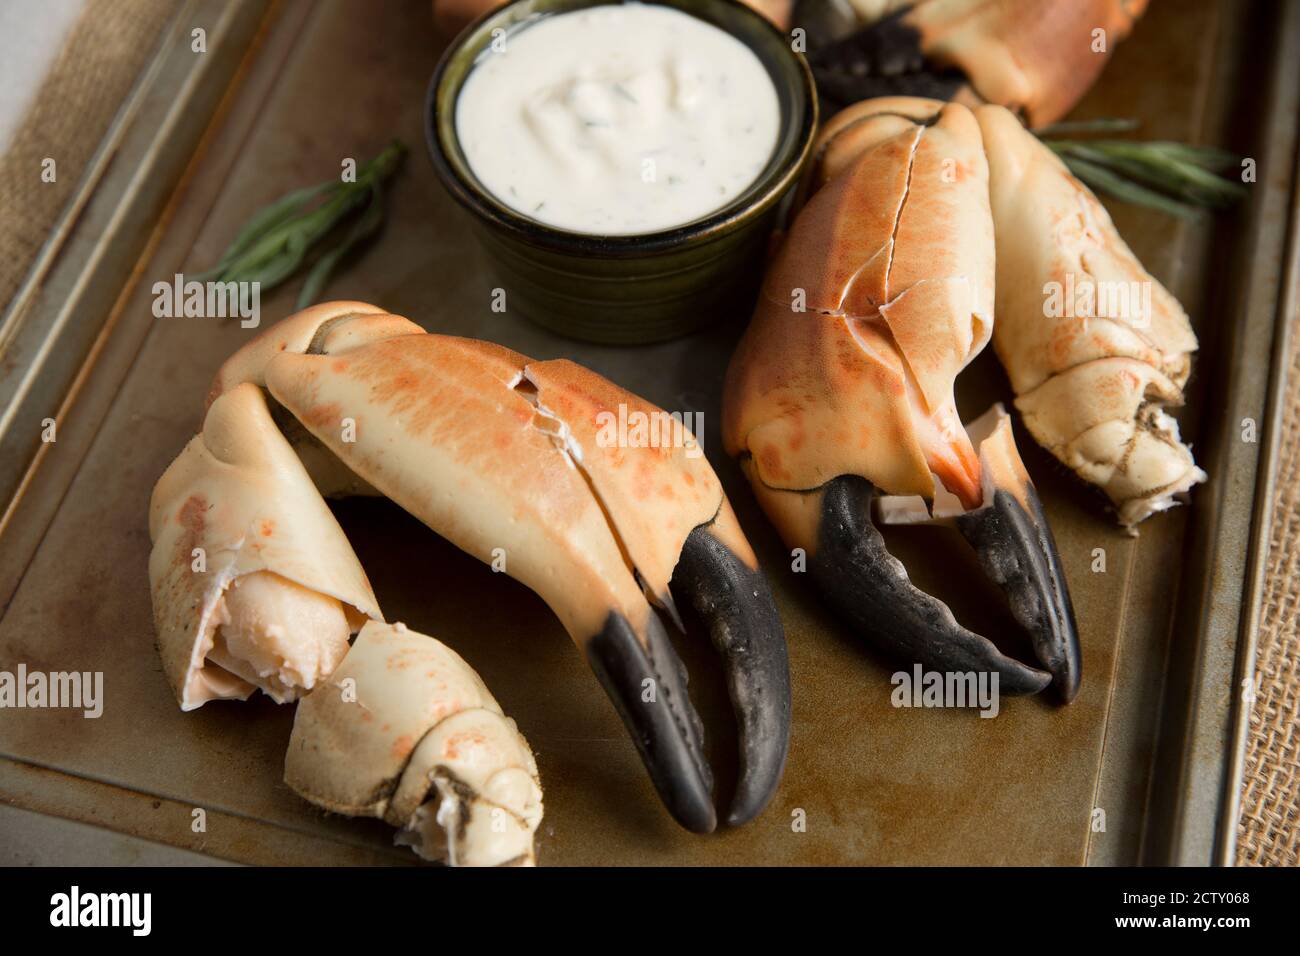 Gekochte Krabbenkrallen aus einer braunen Krabbe, Krebs Pagurus, die mit einem Knoblauch, Estragon und Zitrone Mayonnaise serviert wurden. Dorset England GB Stockfoto